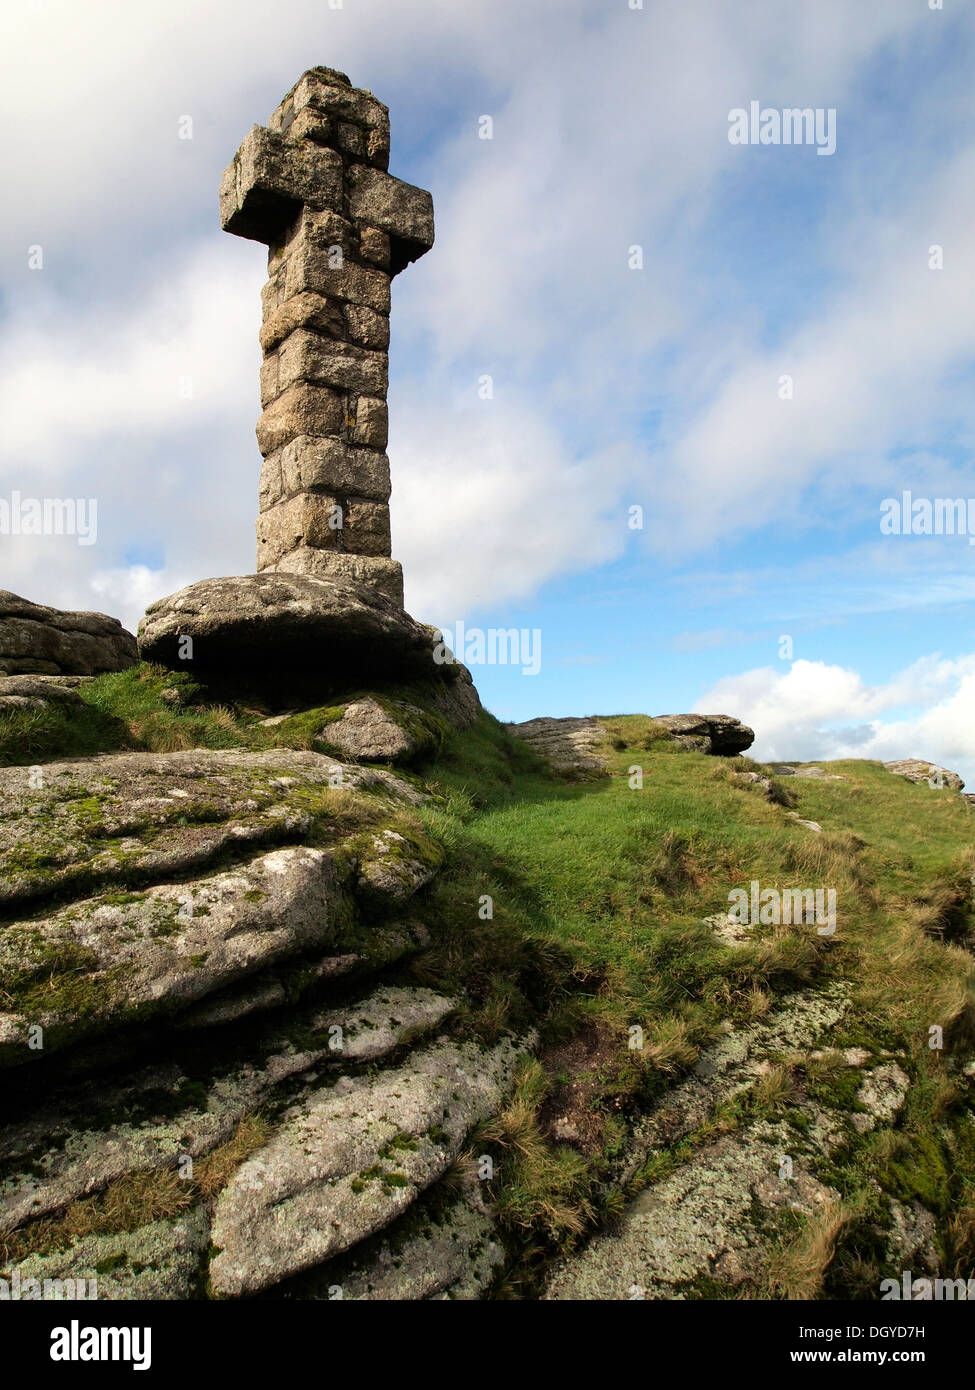 Widgery Cross (sometimes called Jubilee Cross) on Brat Tor, Dartmoor near the village of Lydford, Devon. Stock Photo